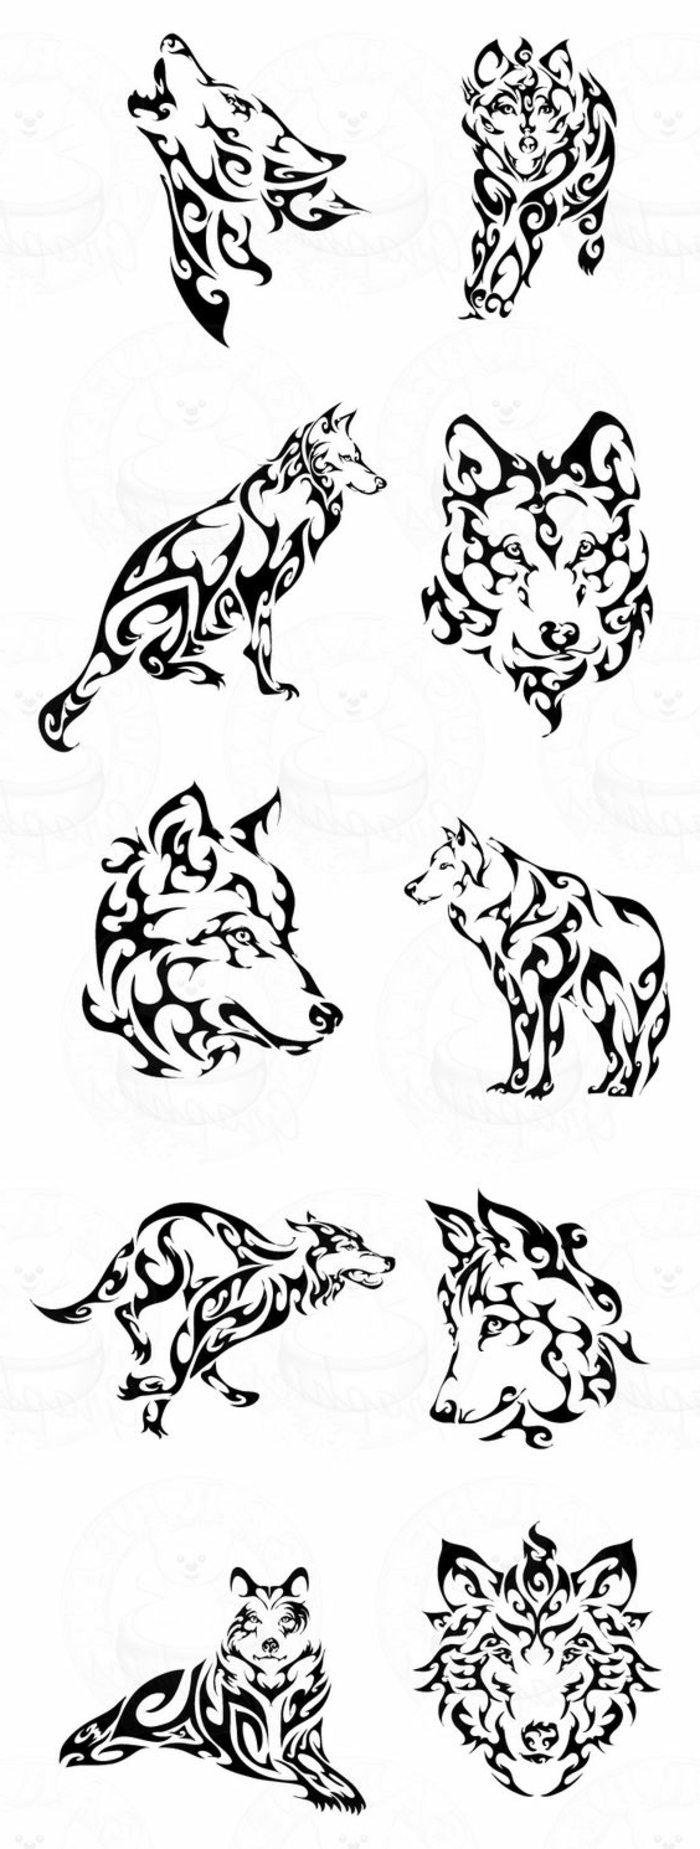 plemenski vuk - ovdje ćete naći vrlo različite ideje za velike plemenske tetovaže vuka